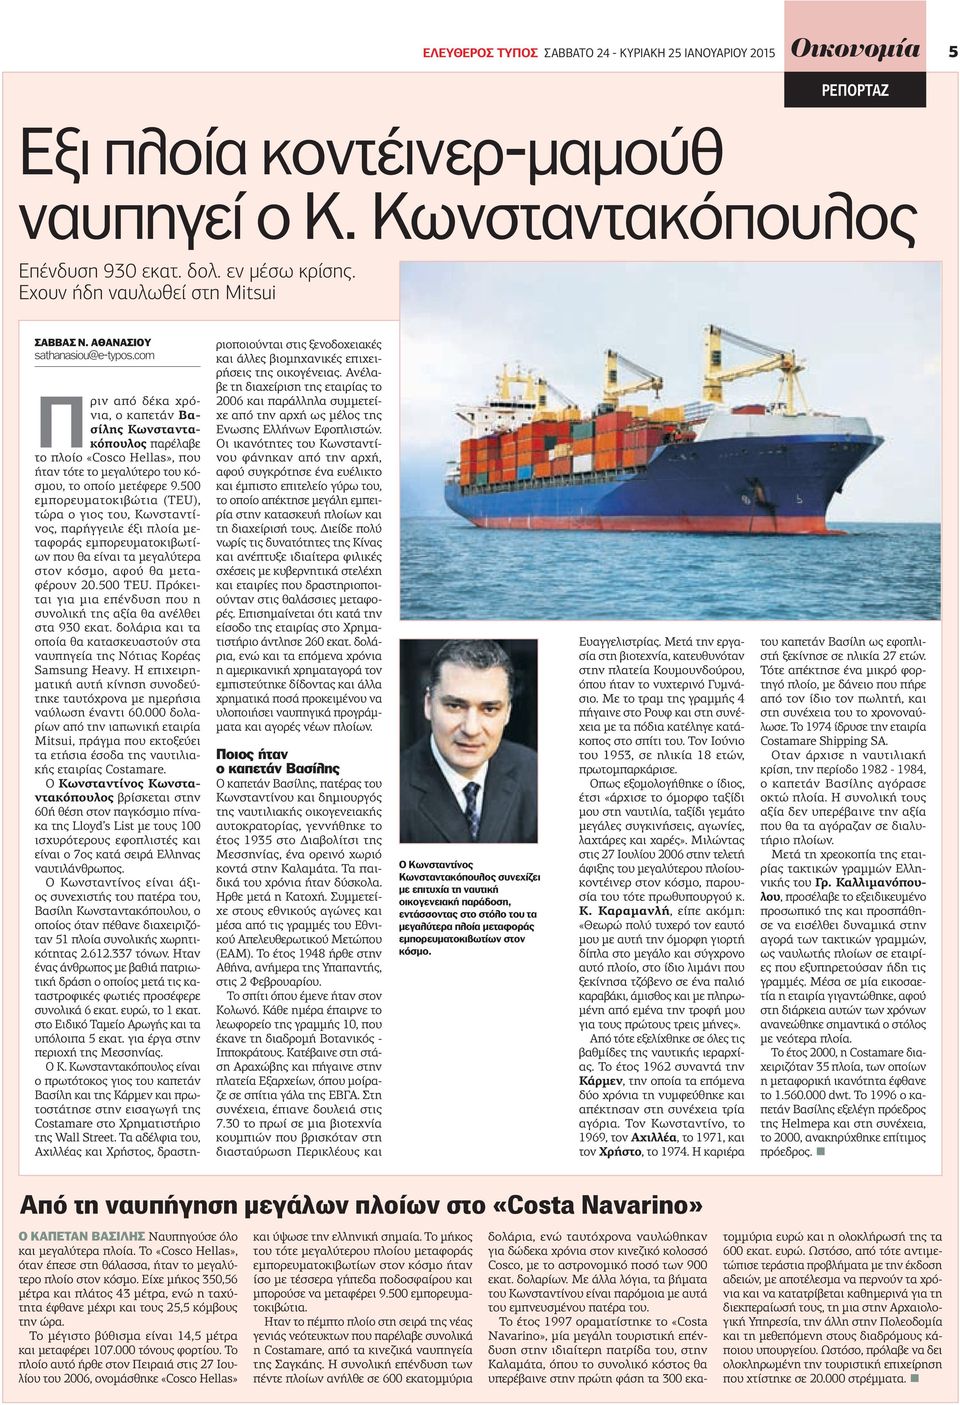 com Πριν από δέκα χρόνια, ο καπετάν Βασίλης Κωνσταντακόπουλος παρέλαβε το πλοίο «Cosco Hellas», που ήταν τότε το μεγαλύτερο του κόσμου, το οποίο μετέφερε 9.